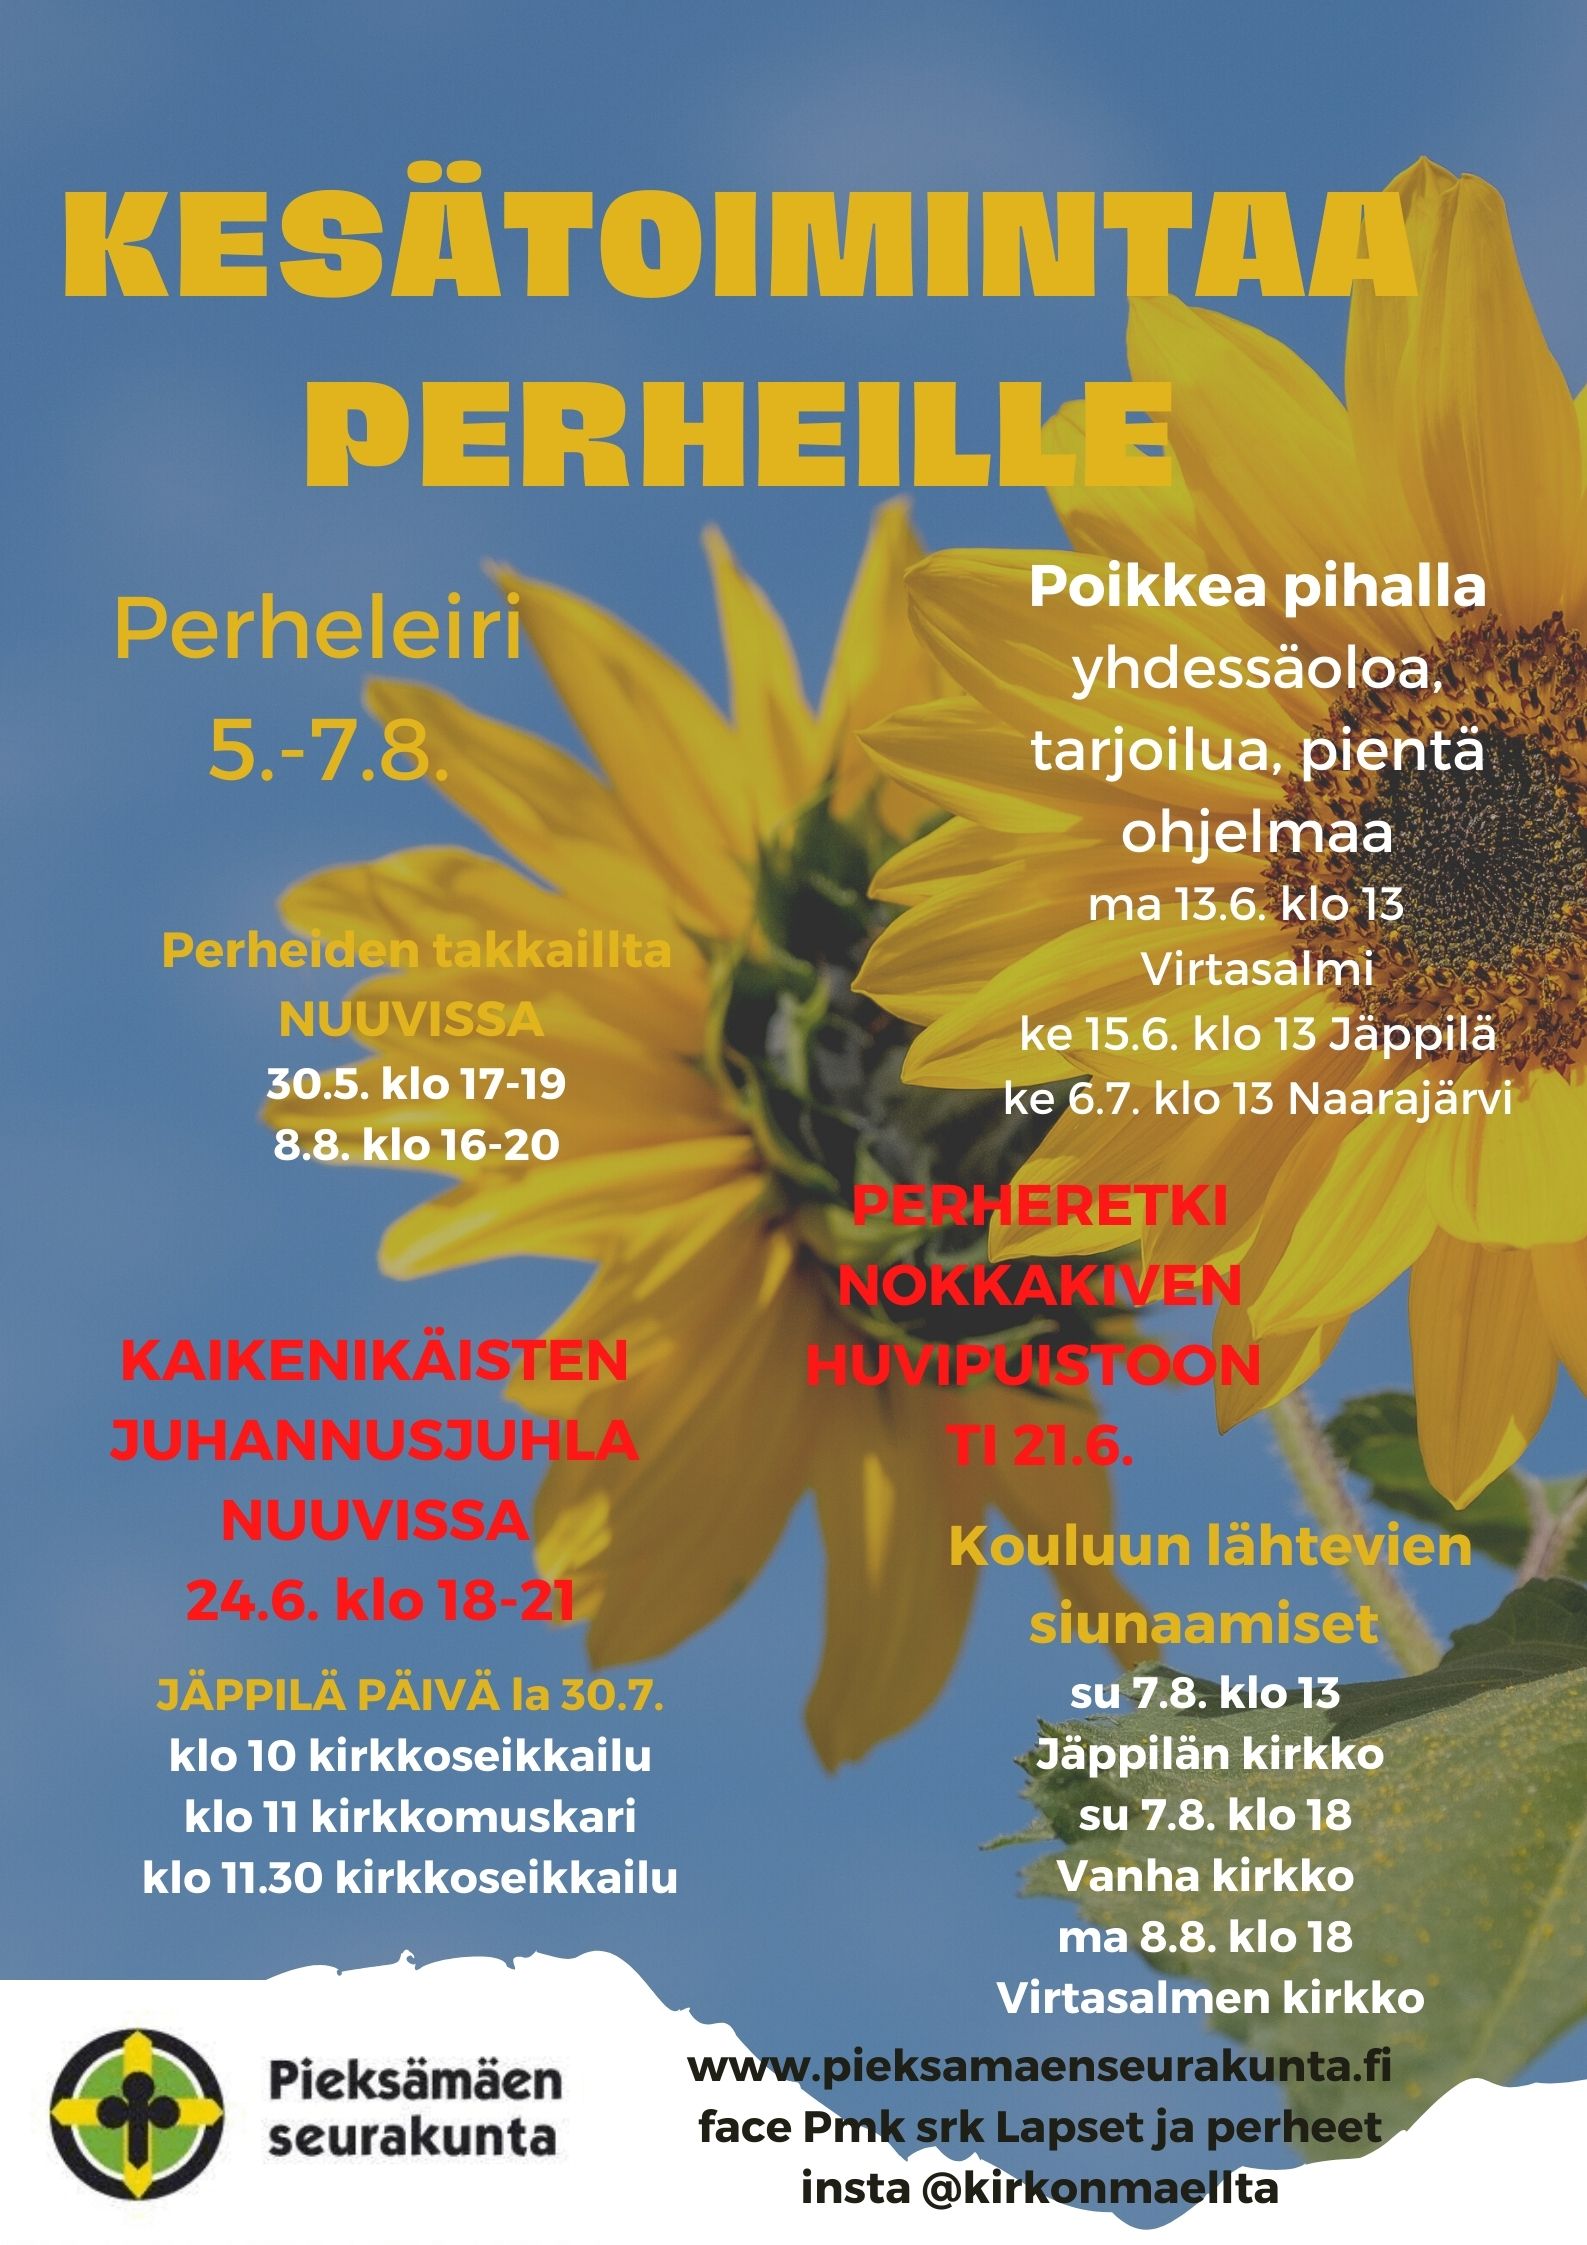 kuvana auringonkukat ja sininen taivas, tekstinä kesätoimintaa perheille